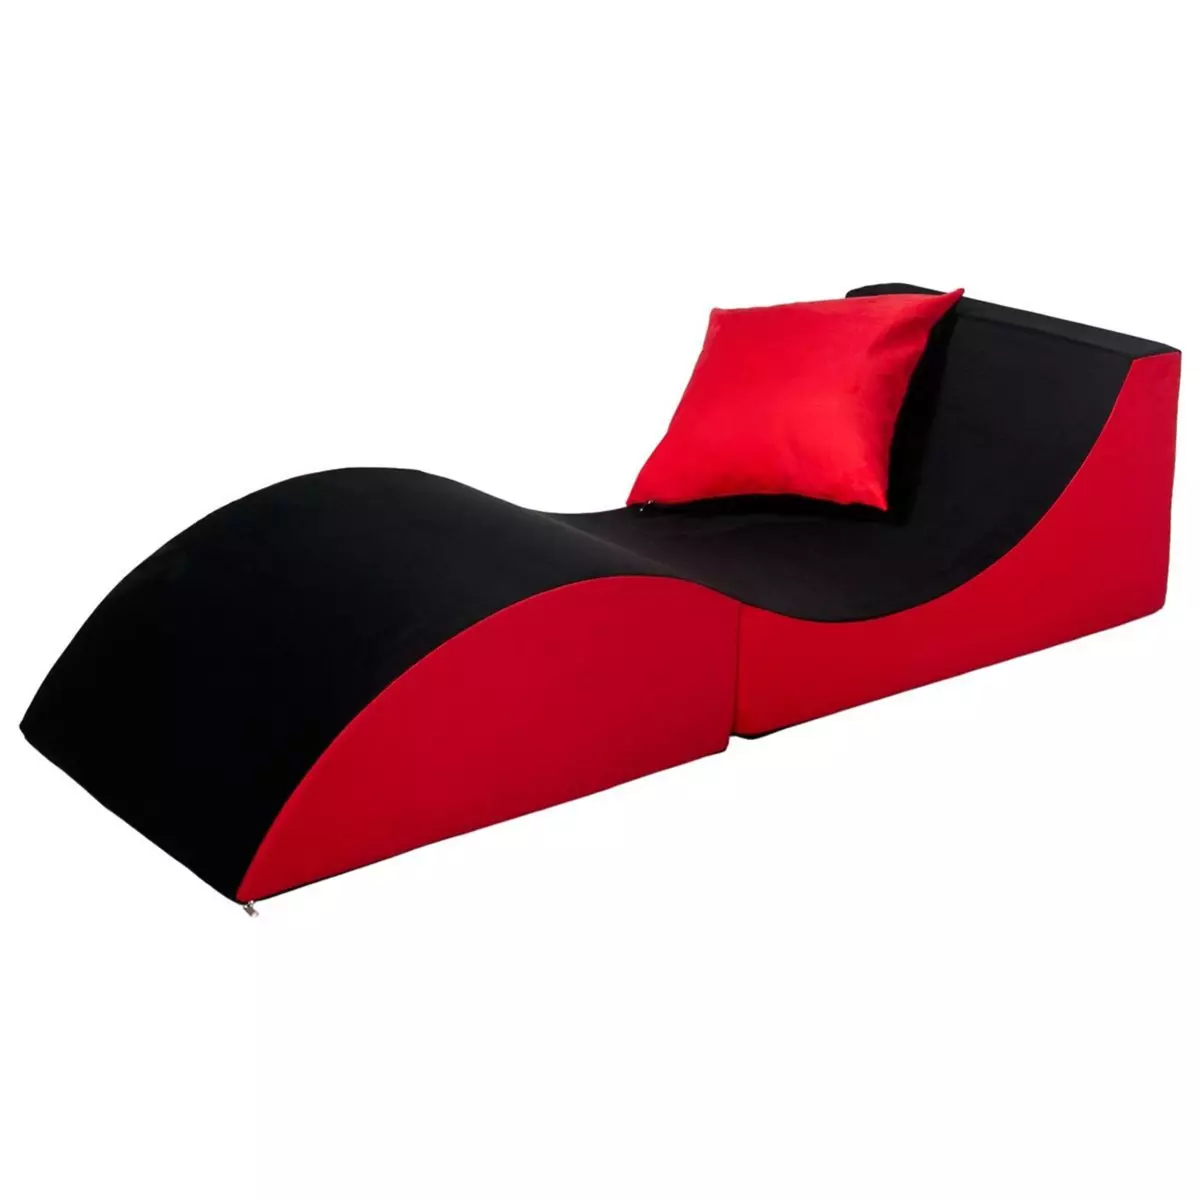  Chaise longue 3 en 1 multi-usage noir-rouge